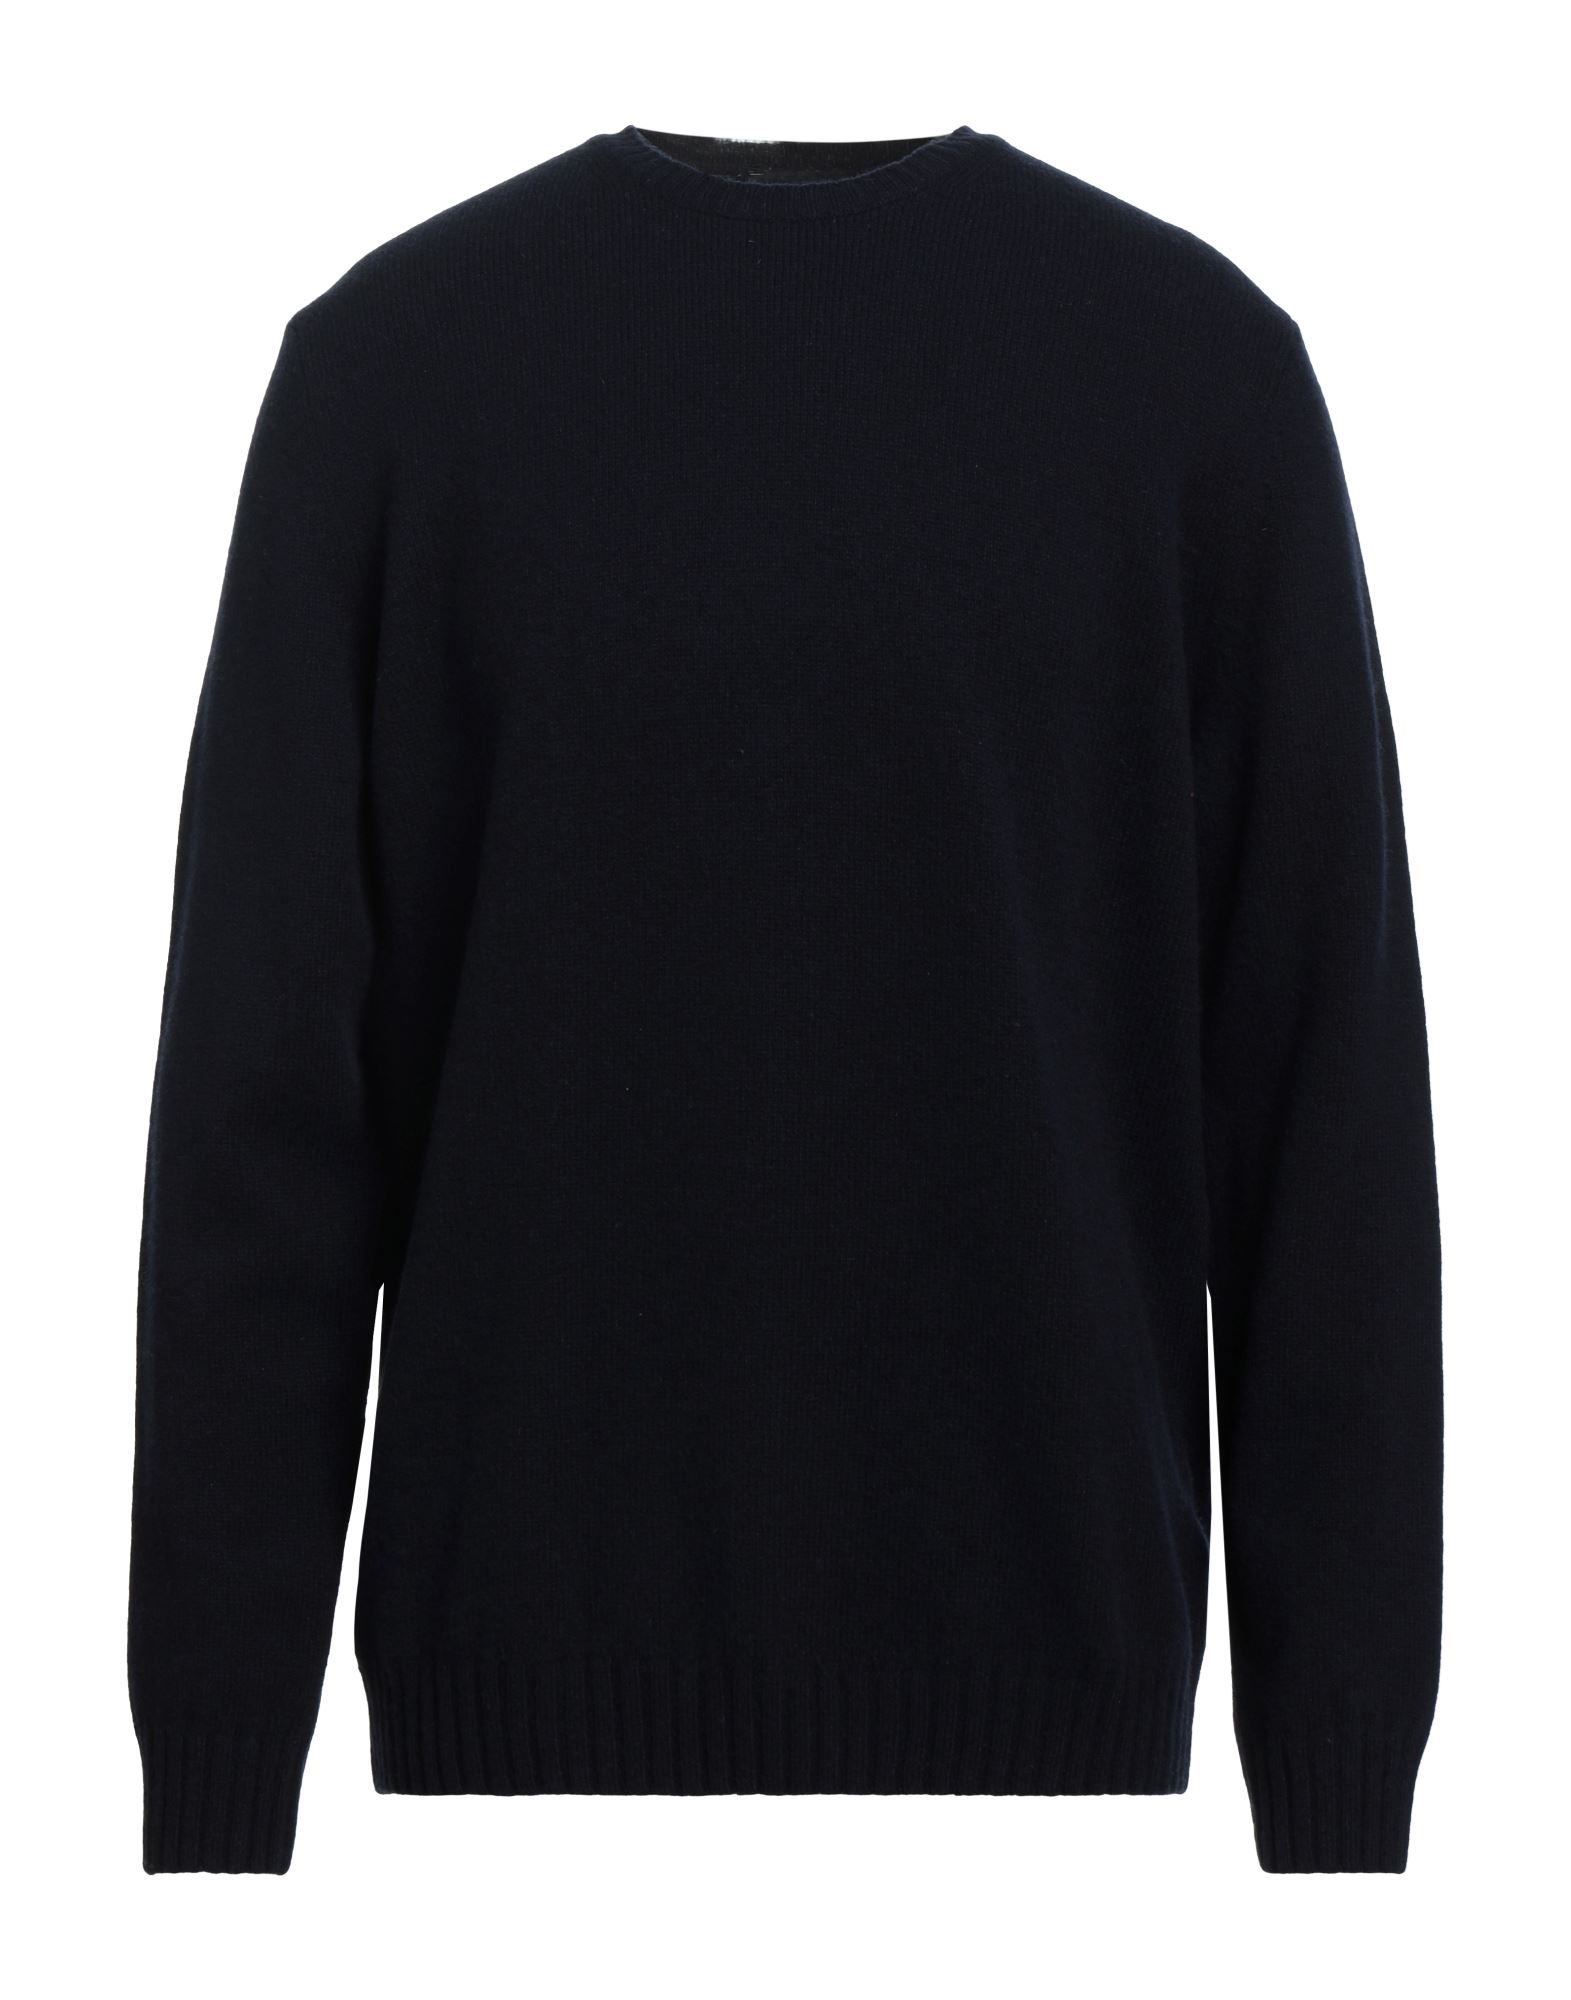 Liu •jo Man Man Sweater Midnight Blue Size Xxl Wool